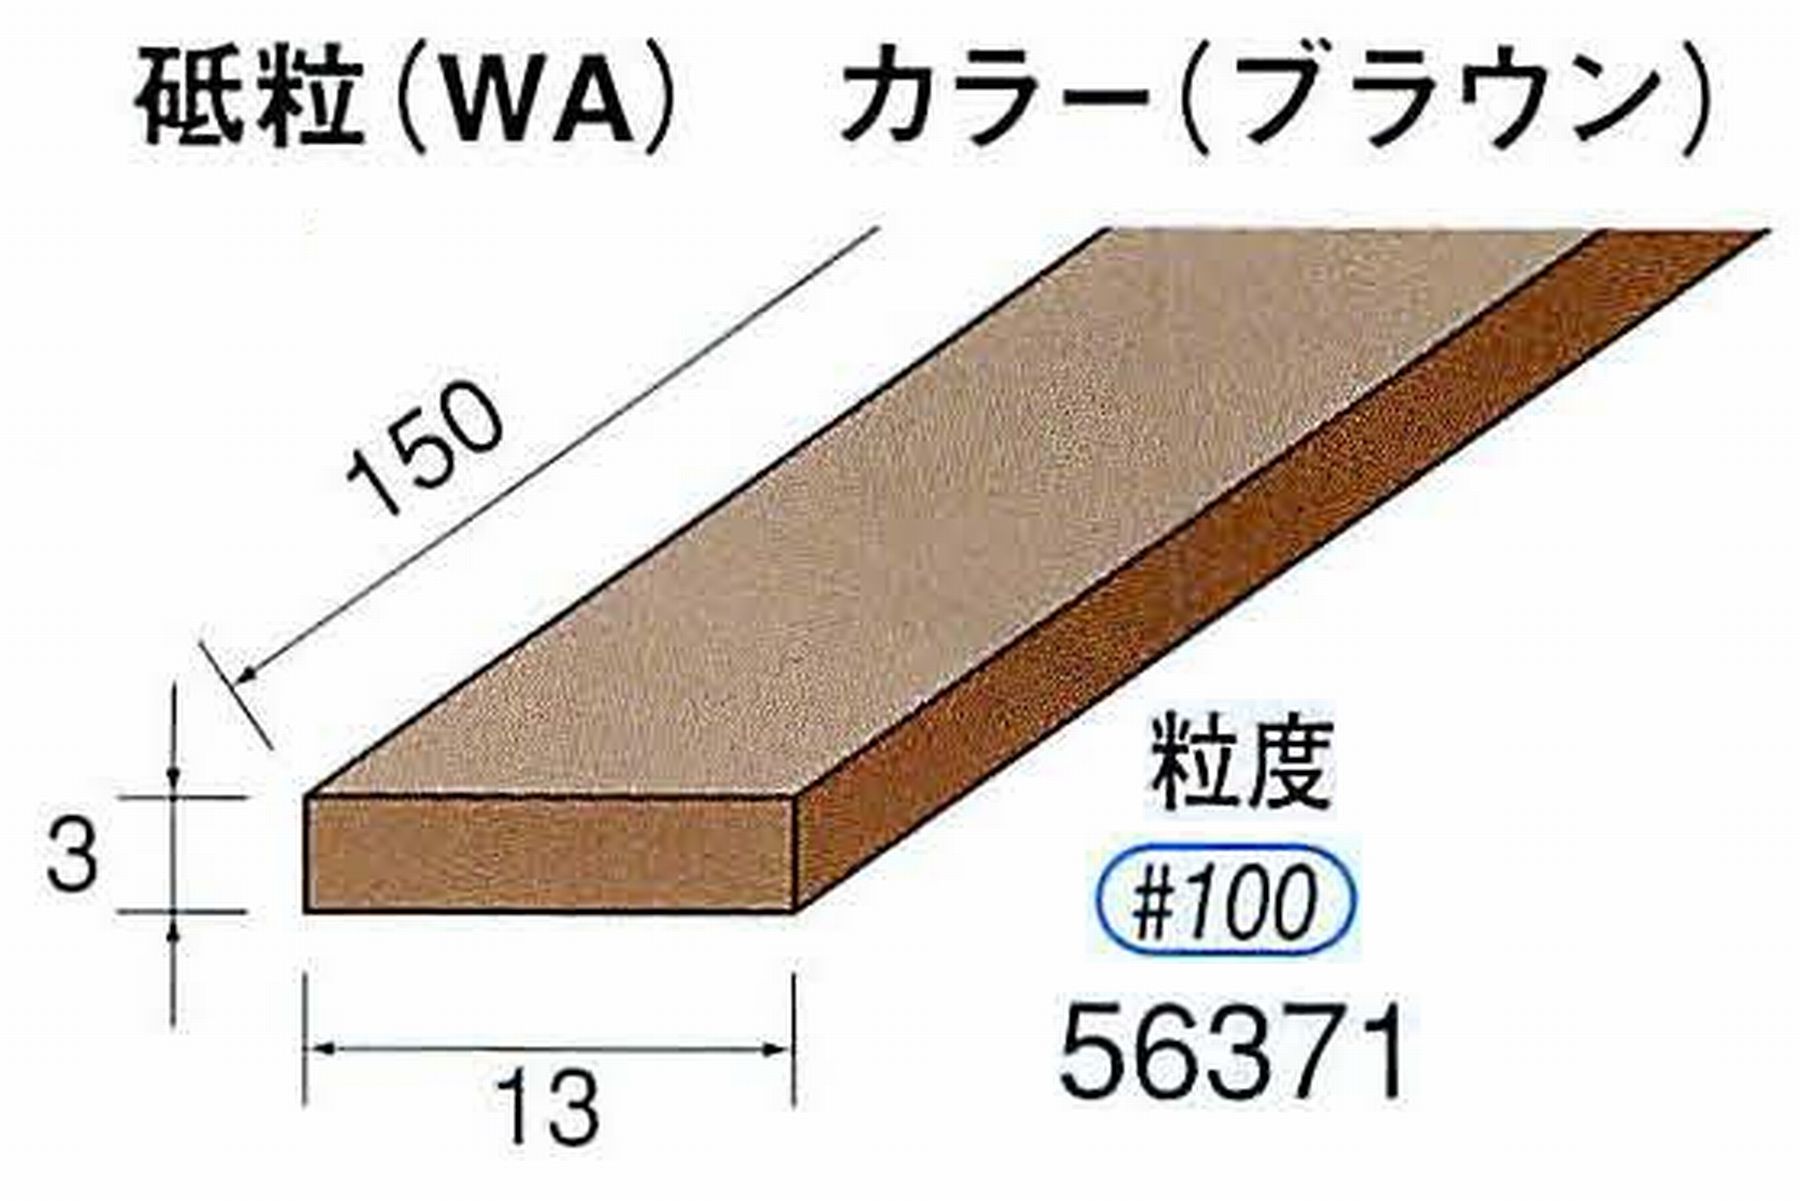 ナカニシ/NAKANISHI スティック砥石 ブラウン・フィニッシュシリーズ 砥粒(WA) 56371